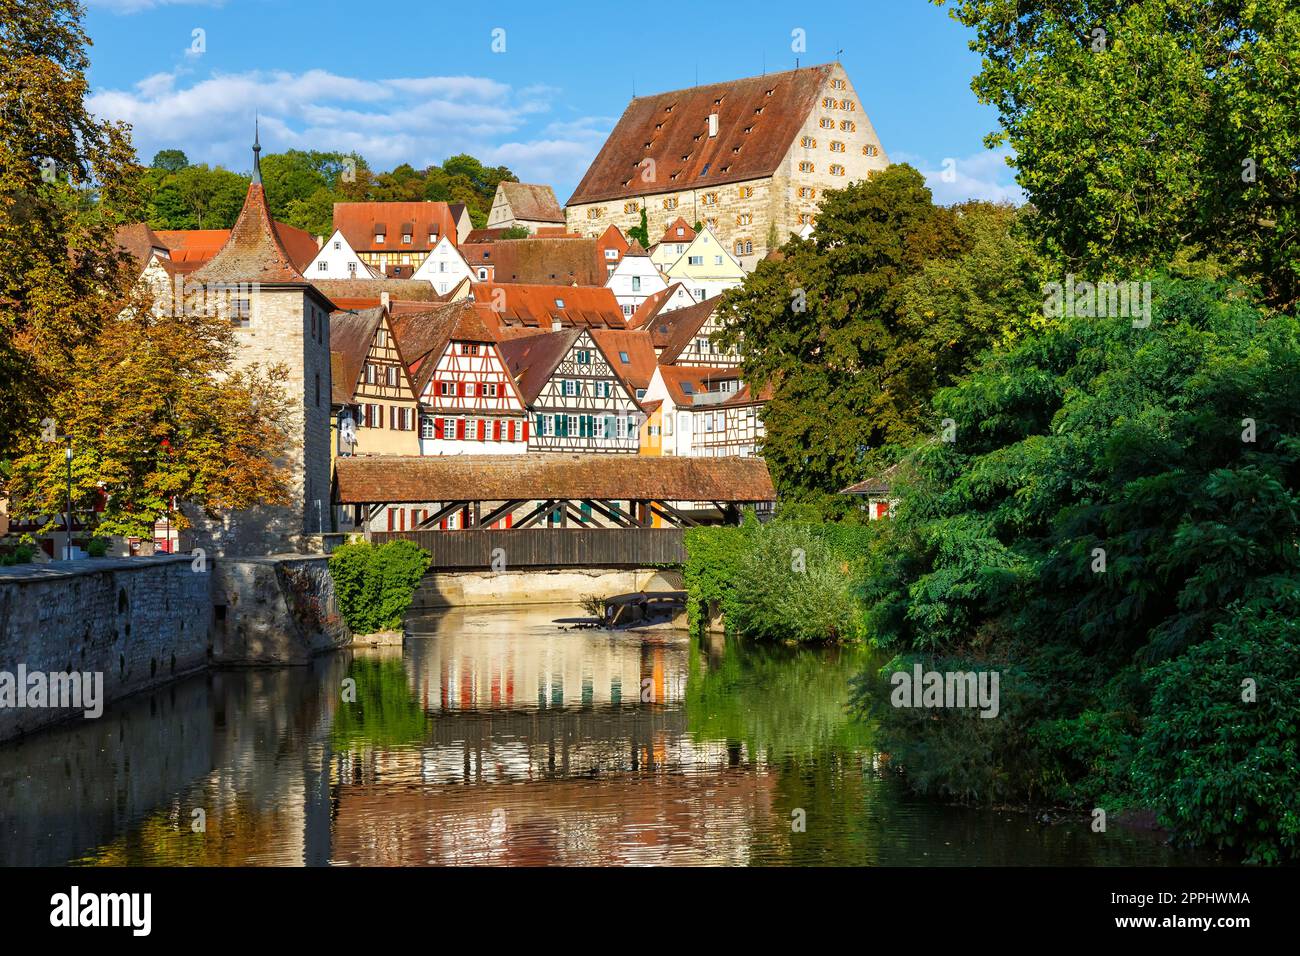 SchwÃ¤bisch Hall maisons à colombages de la ville du Moyen âge au bord de la rivière Kocher en Allemagne Banque D'Images